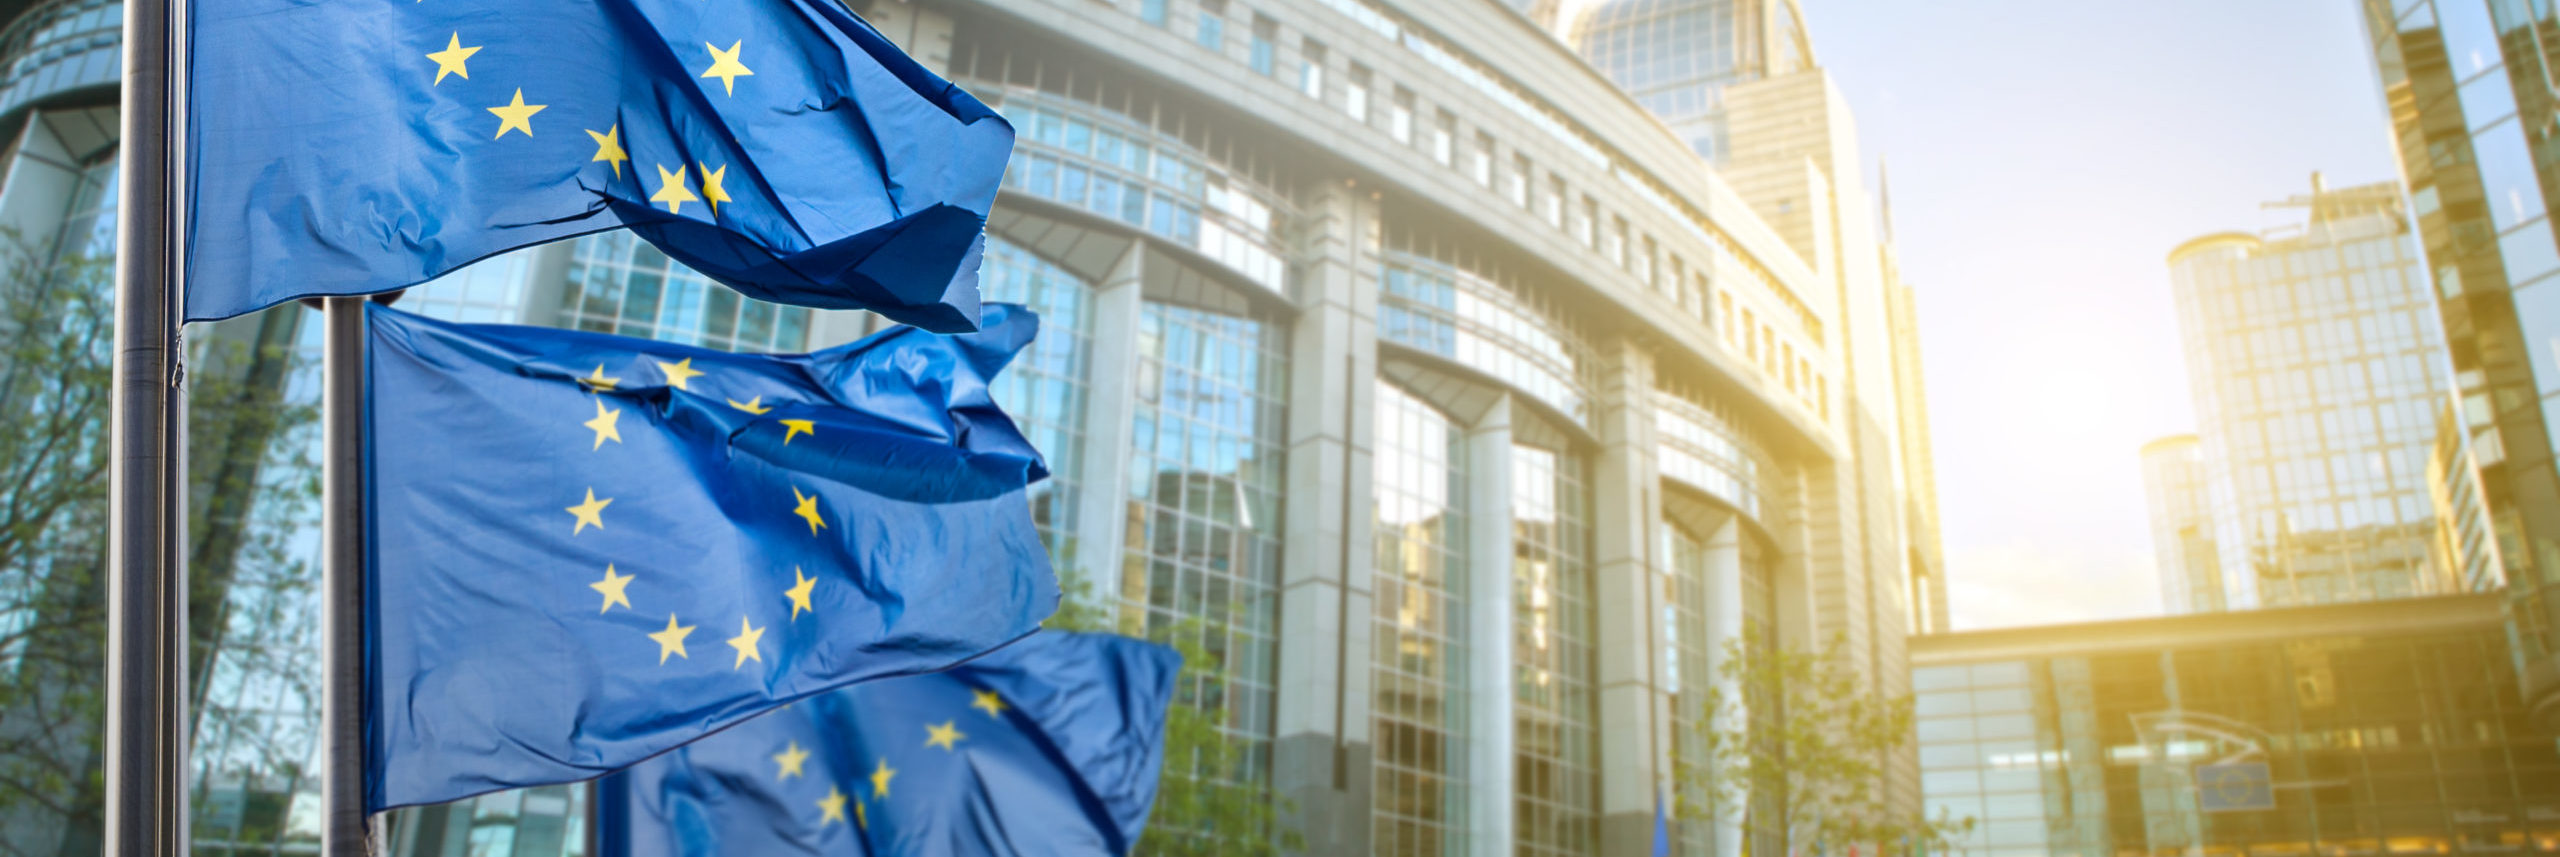 Les données sur la durabilité des entreprises sont au cœur du projet européen d’union des marchés de capitaux.